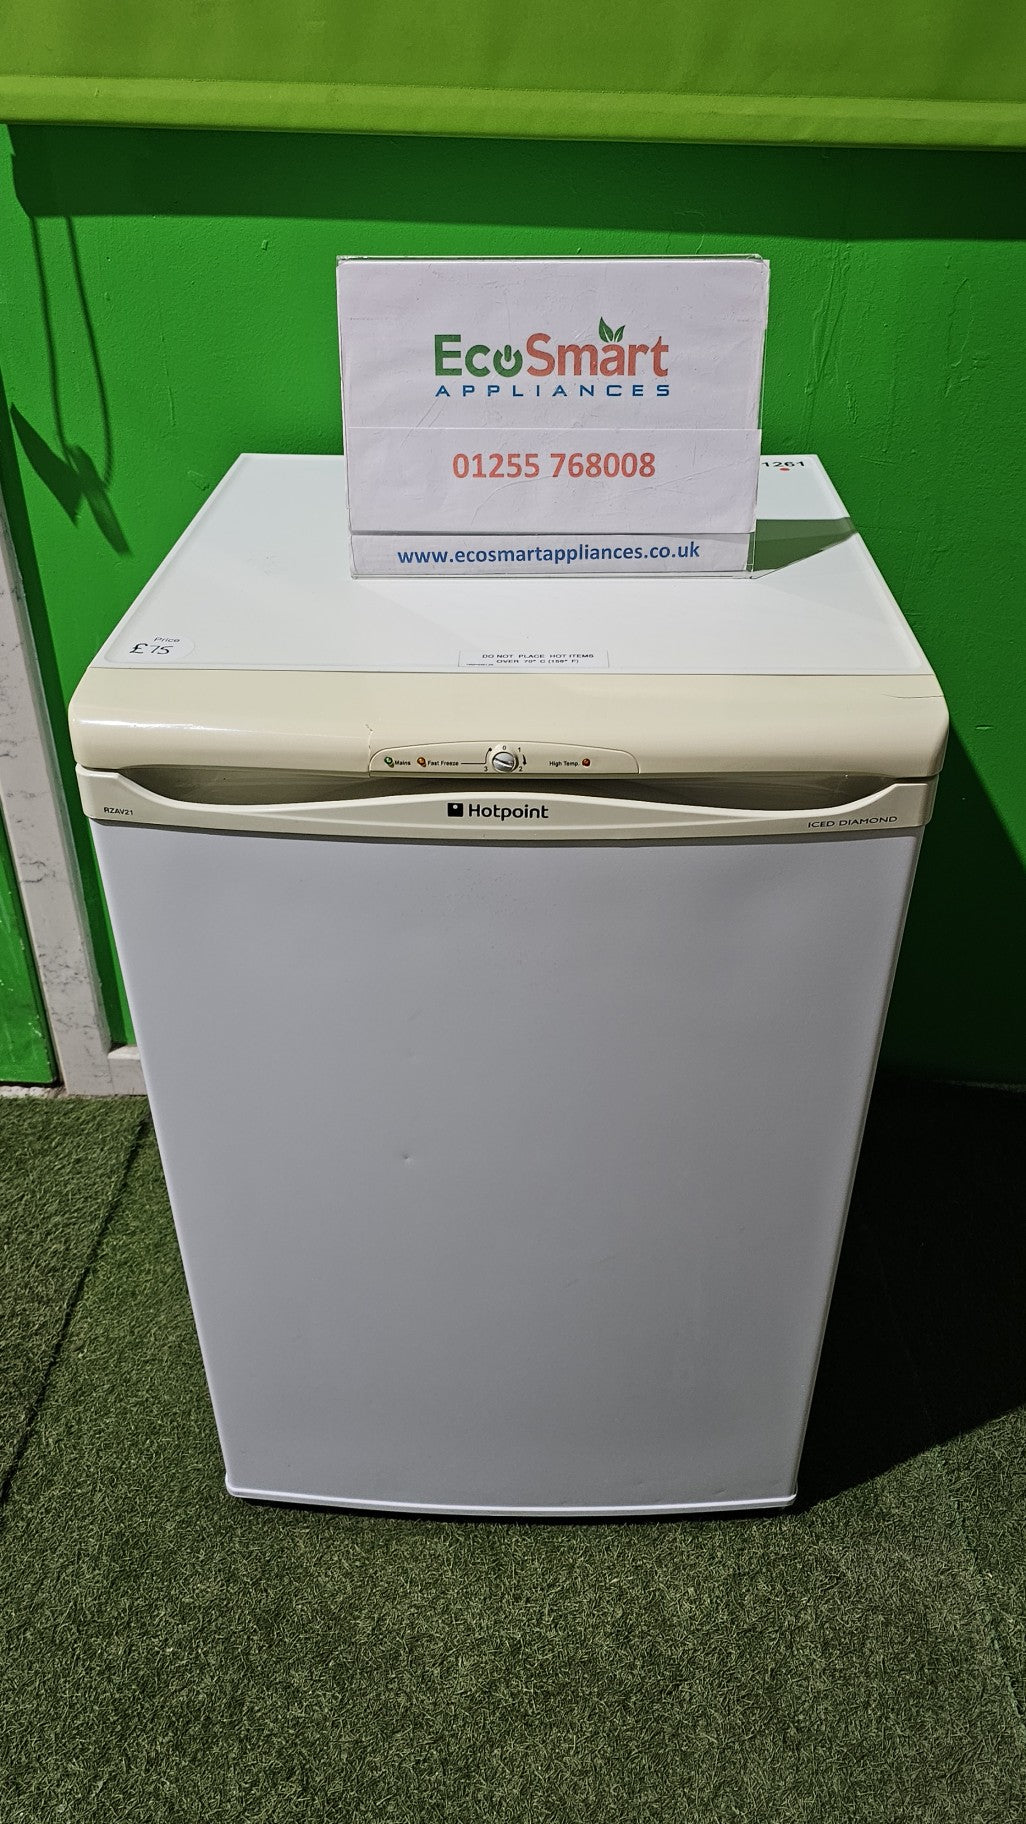 EcoSmart Appliances - Hotpoint 55cm Wide Under Counter Freezer white (1261)